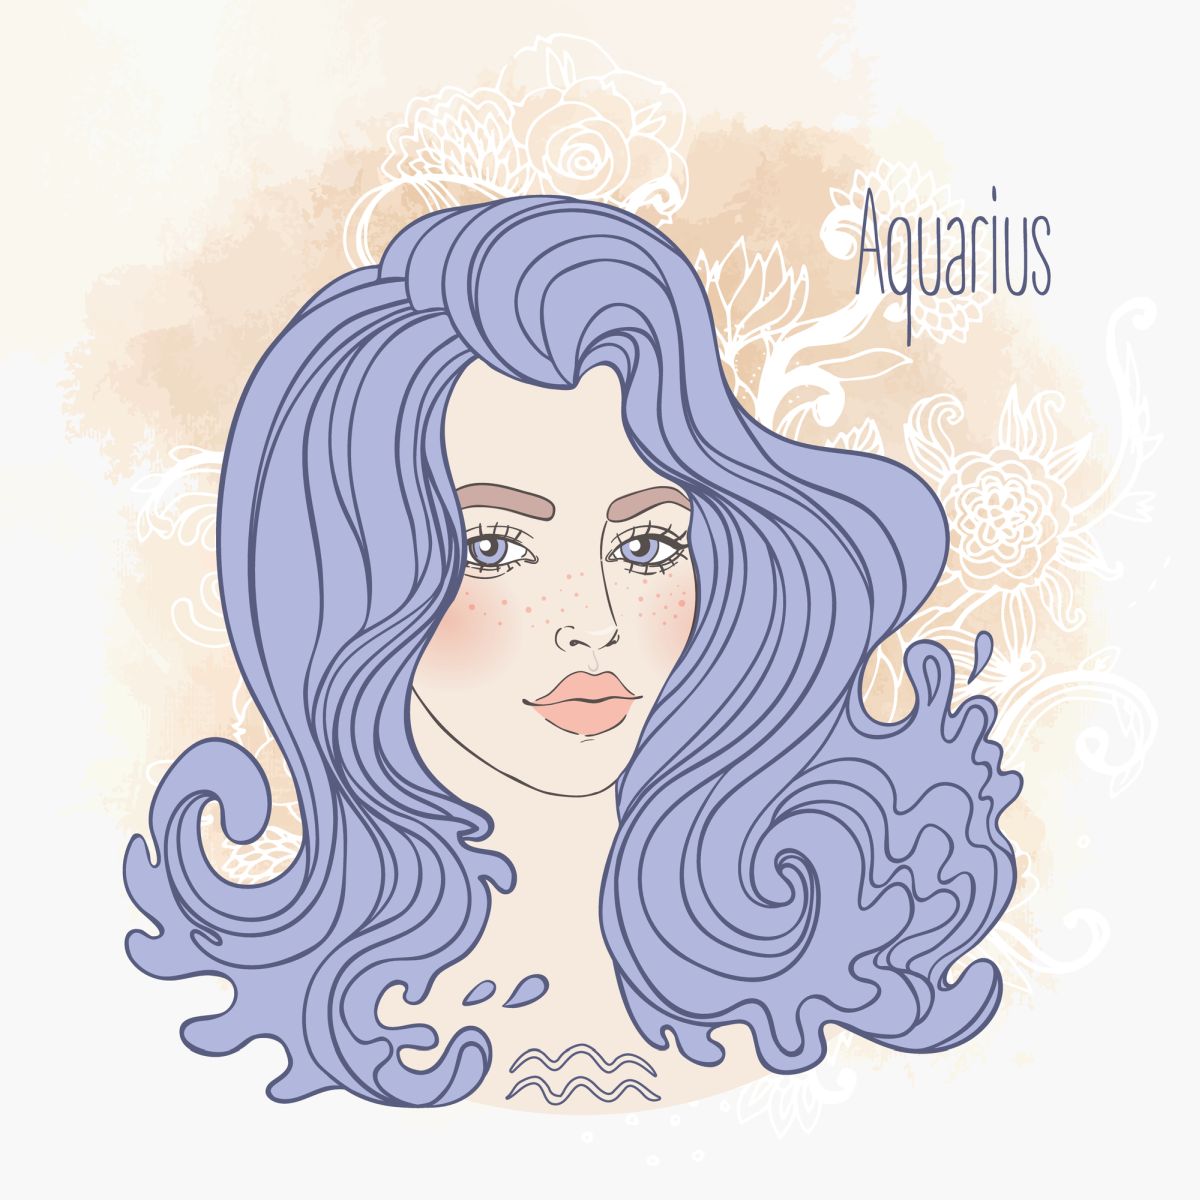 Ilustrația semnului zodiacal Vărsător sub forma unei femei frumoase, cu părul desprins și mov și buze volupstoase, colorate într-o nuanță de roz.